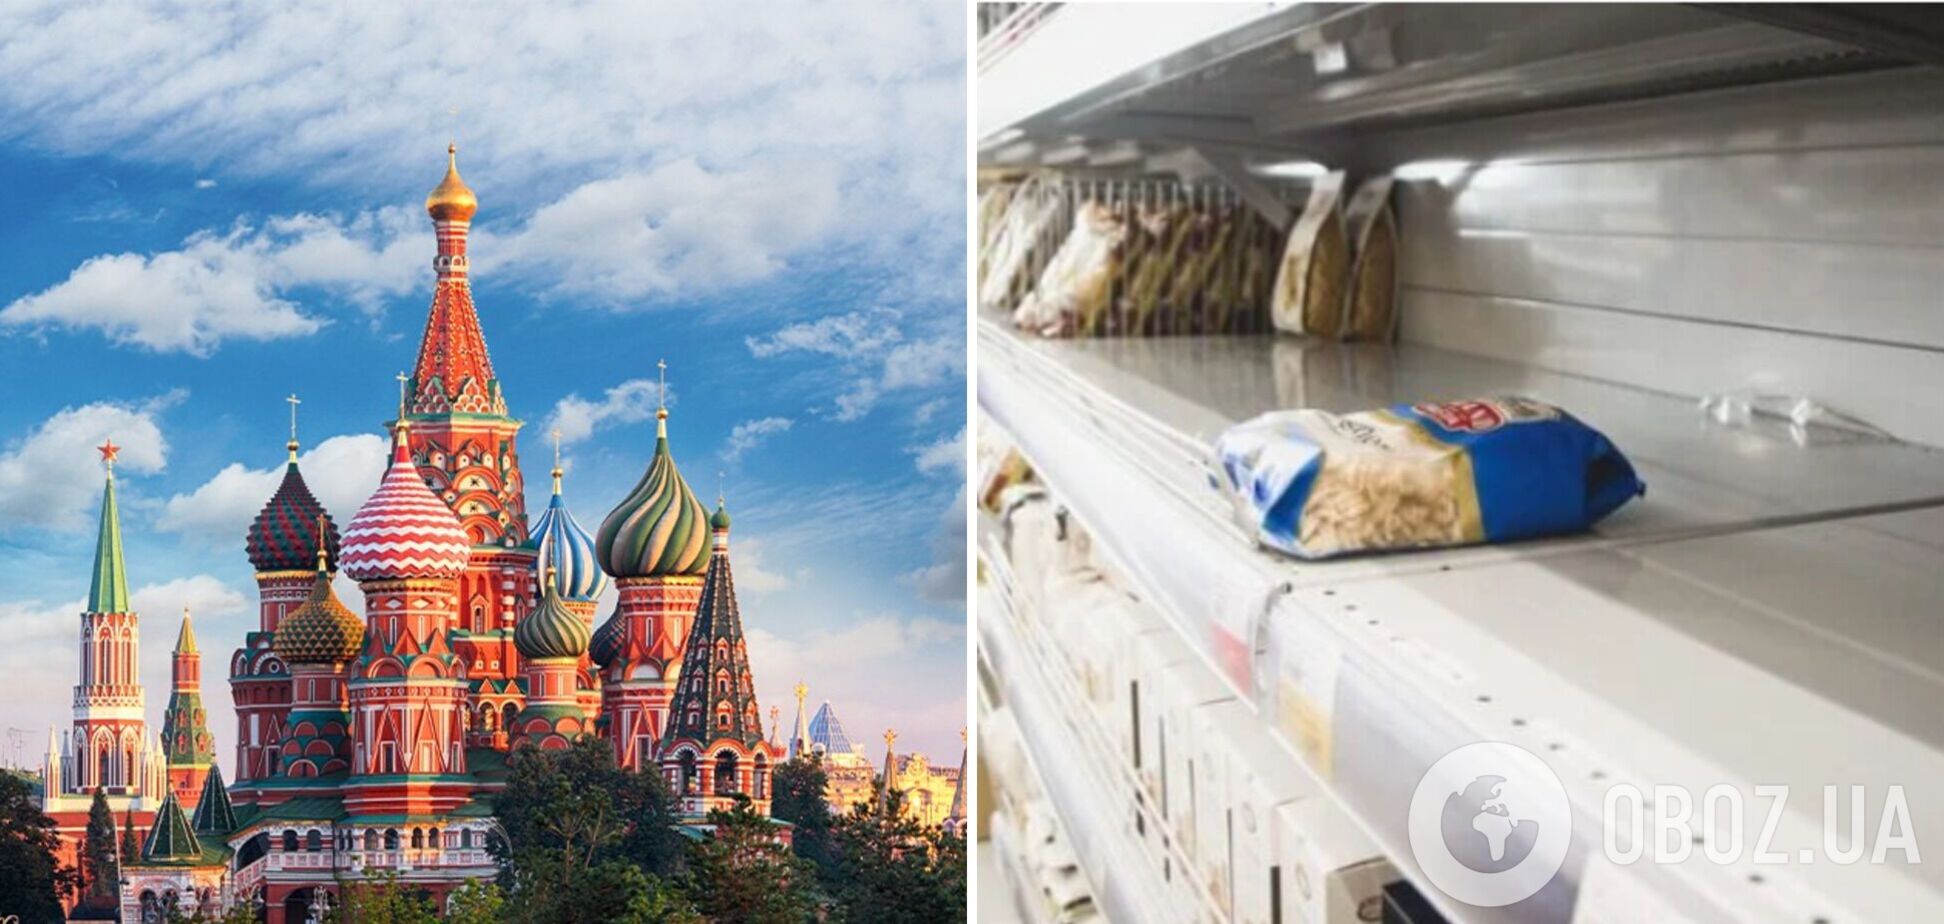 Не хлебом единым: в РФ качественные продукты питания становятся привилегией богачей